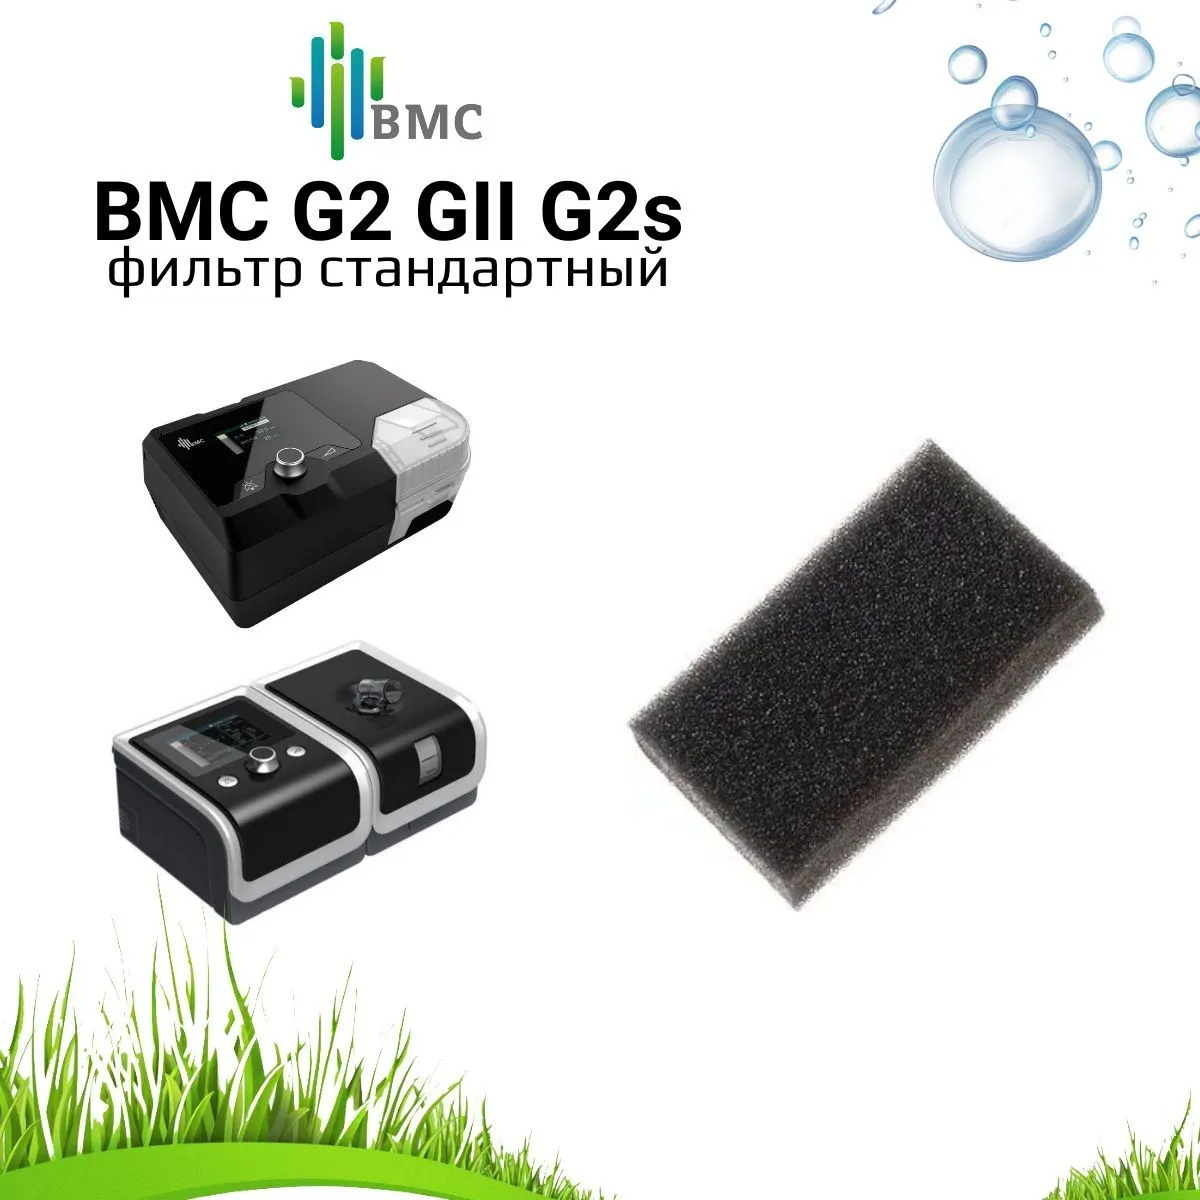 BMC G2 GII G2s фильтр стандартный воздушный (5 штук) для сипап